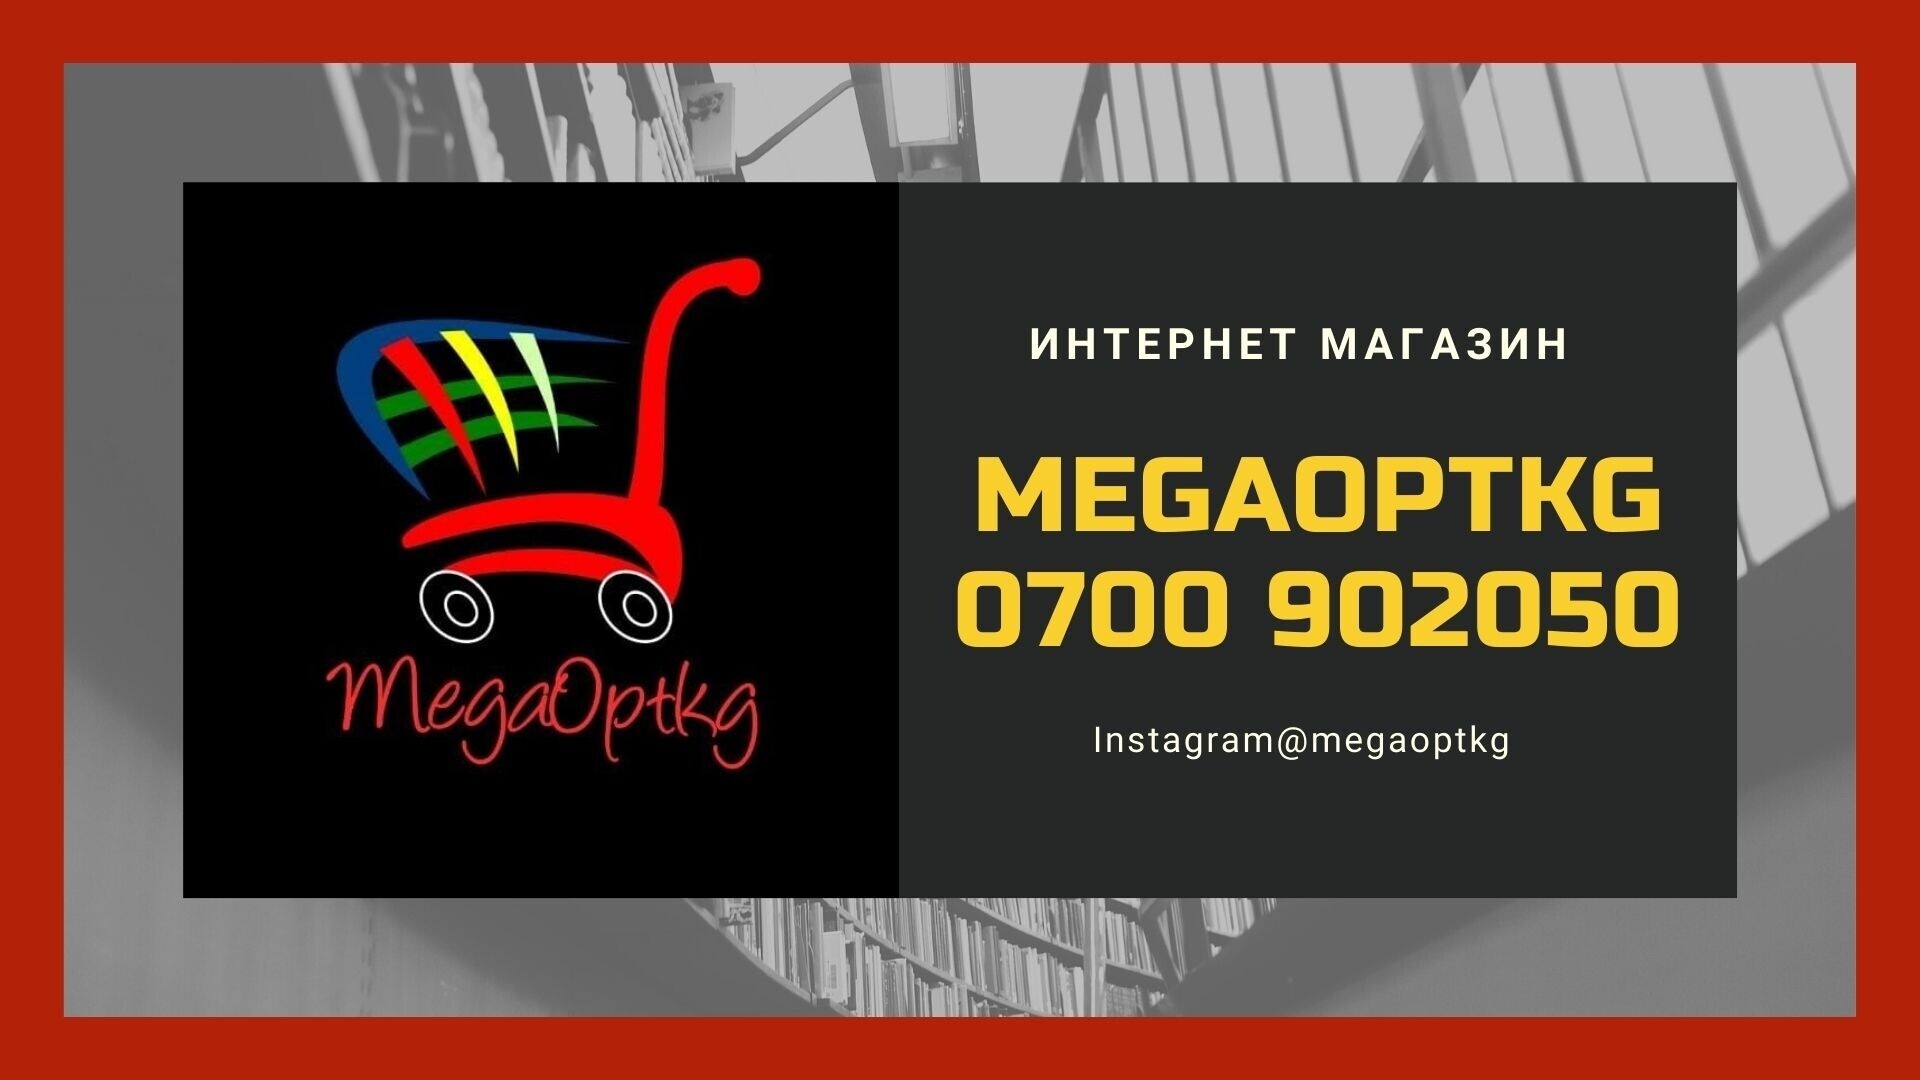 MegaOptkg - У нас Лучшие цены в городе! - Бизнес-профиль компании на lalafo.kg | Кыргызстан